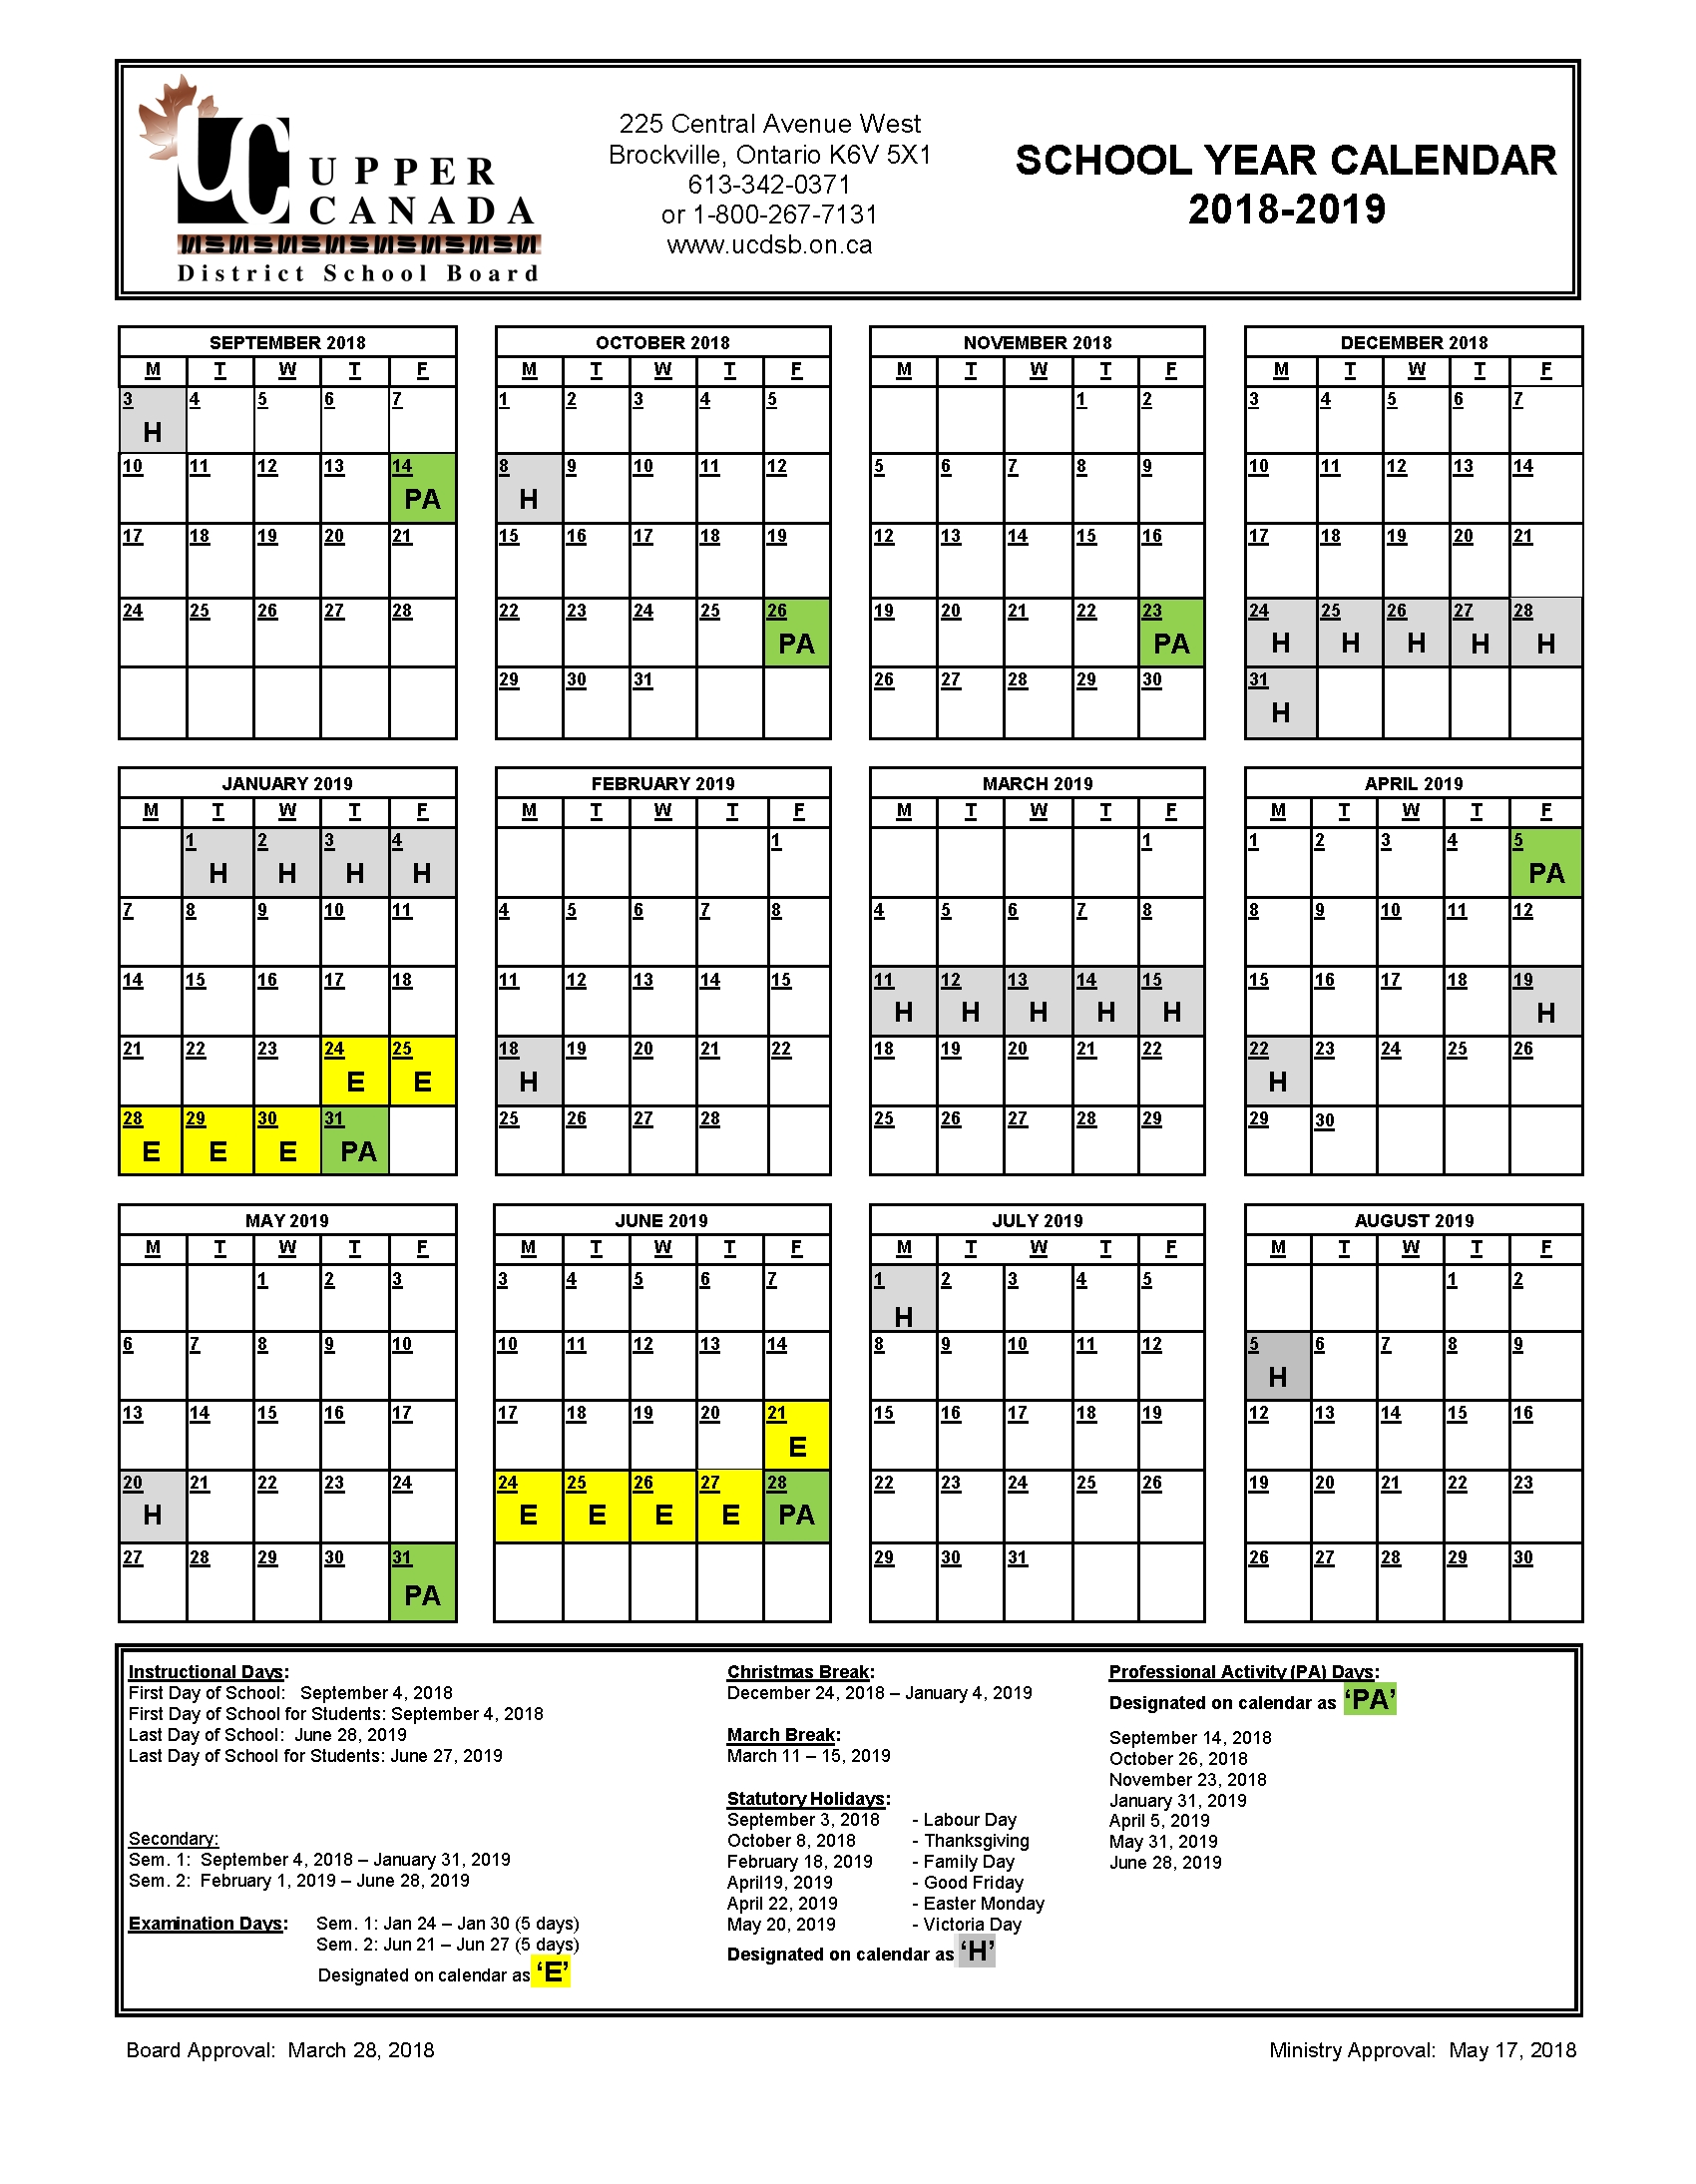 2018-2019 School Year Calendar - Upper Canada District School Board Dashing School Calendar Lawrence Township